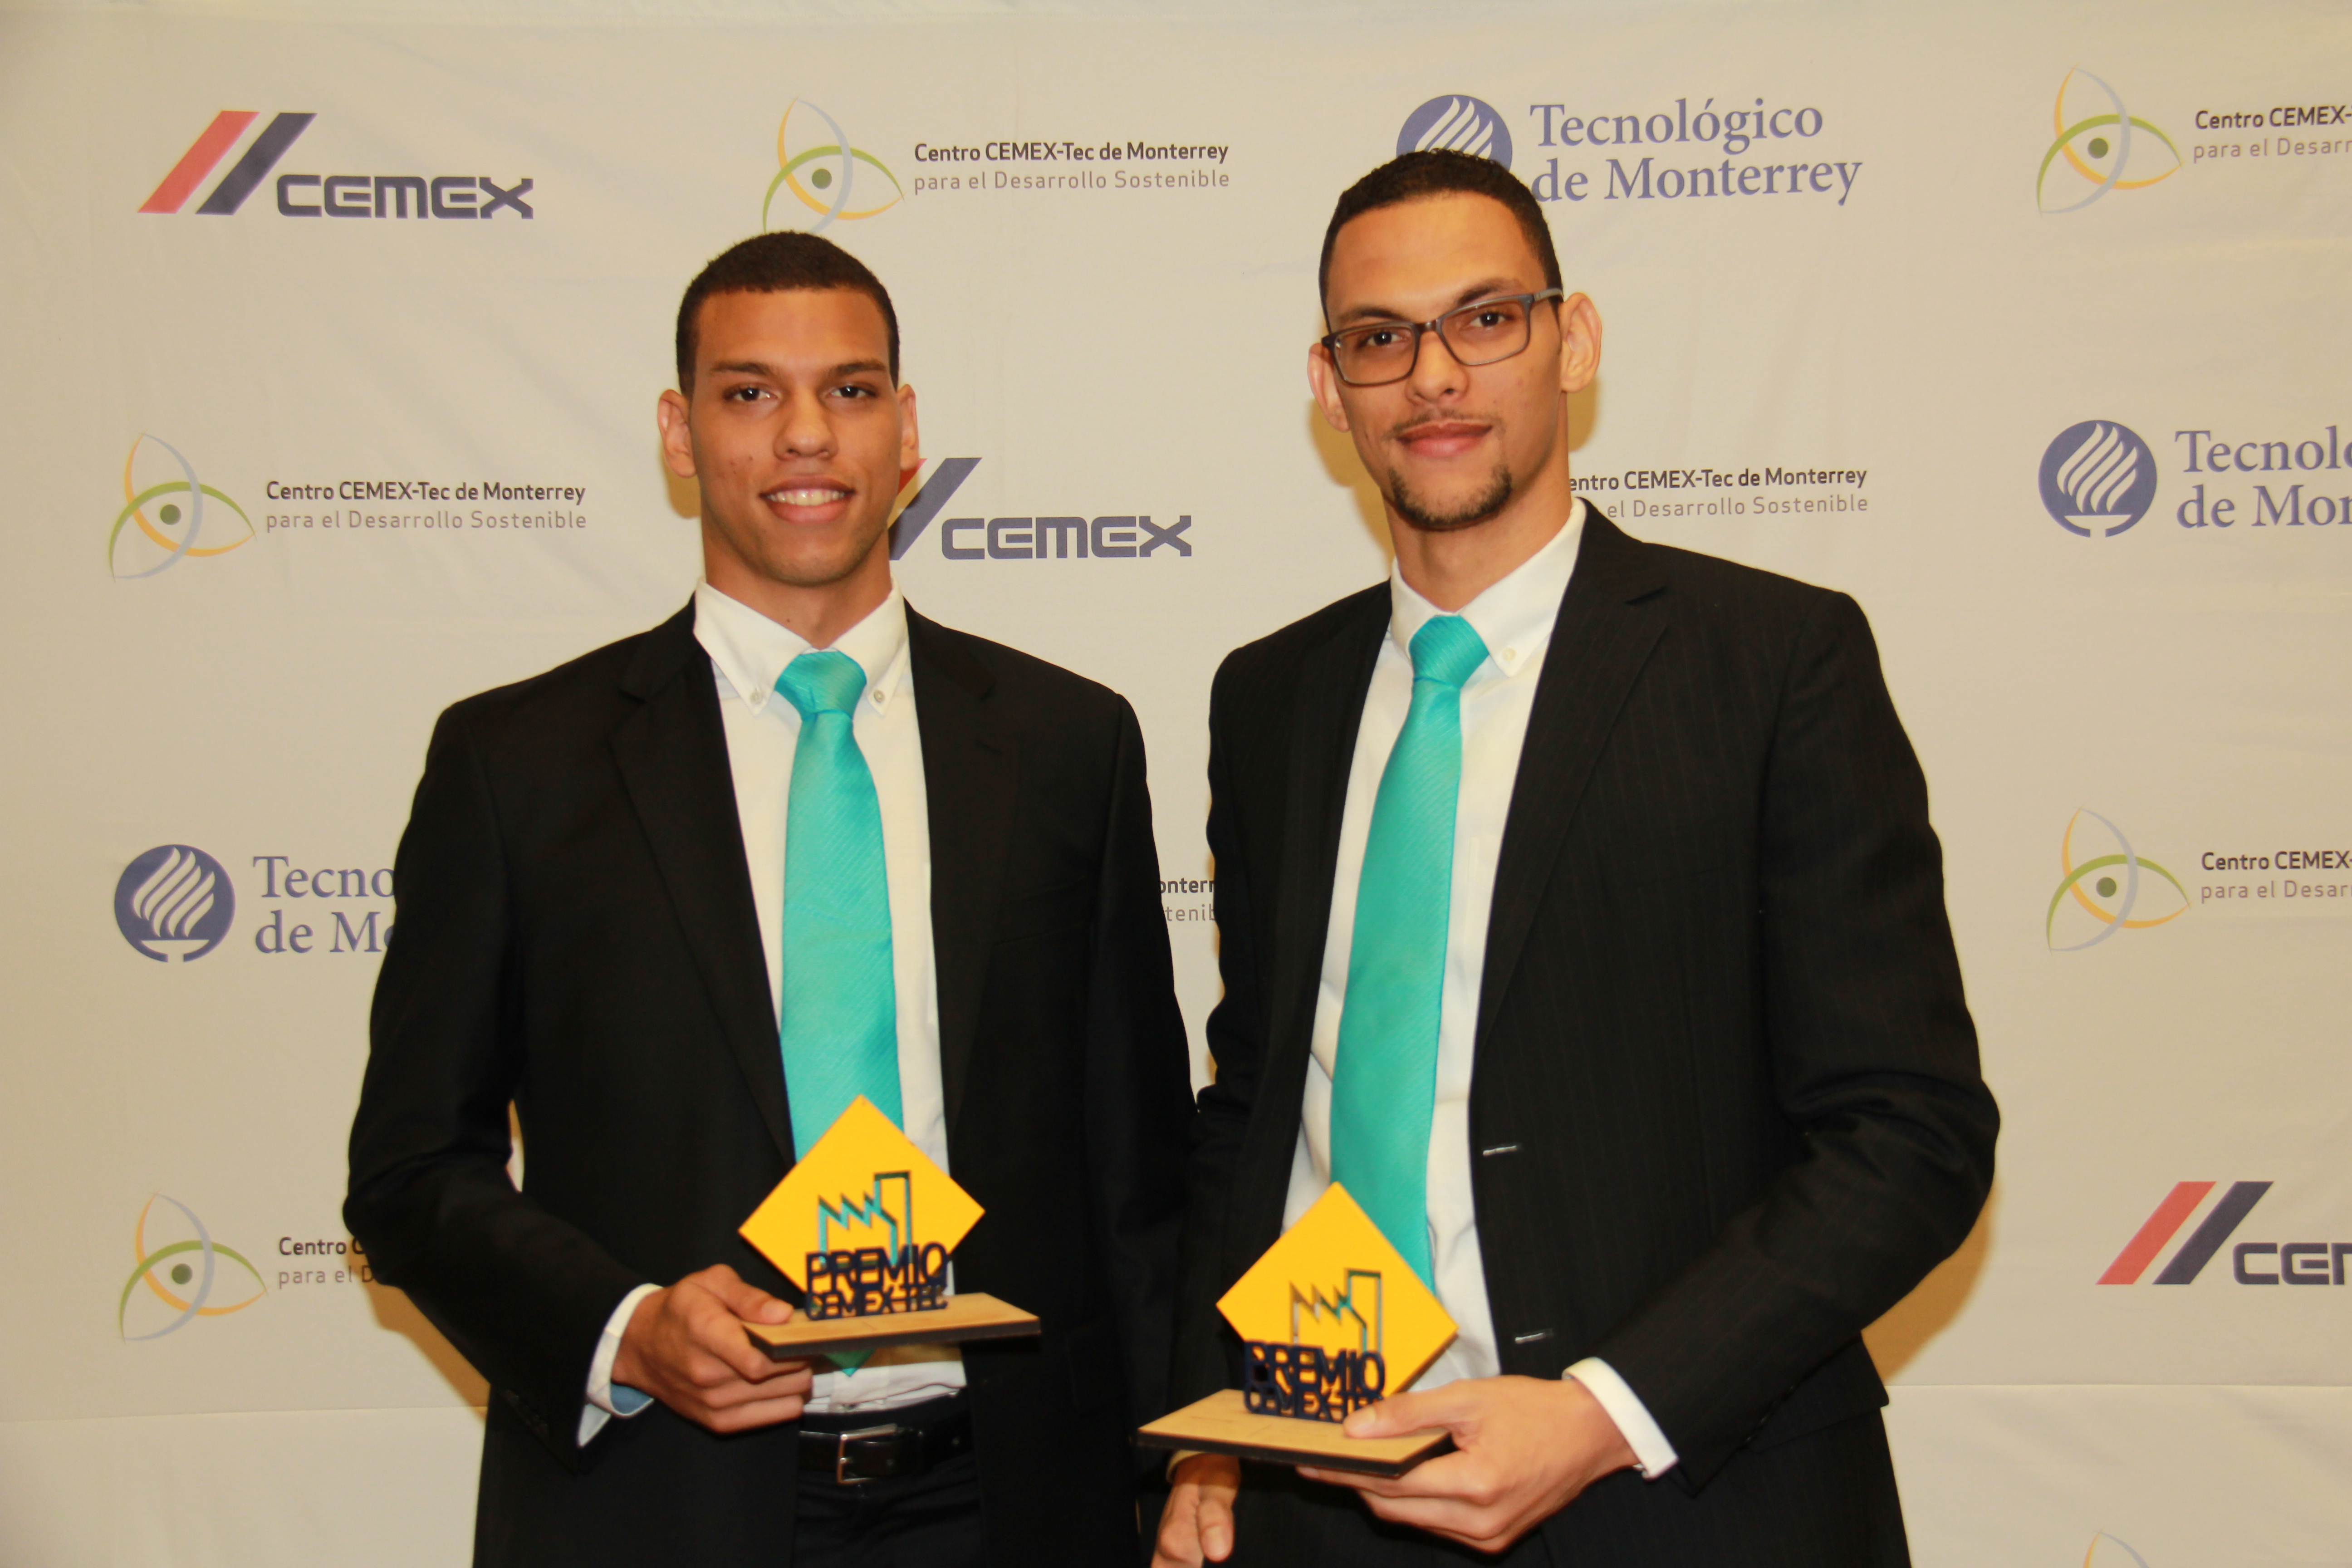  Estudiantes de la PUCMM recibieron premio CEMEX-Tec en México